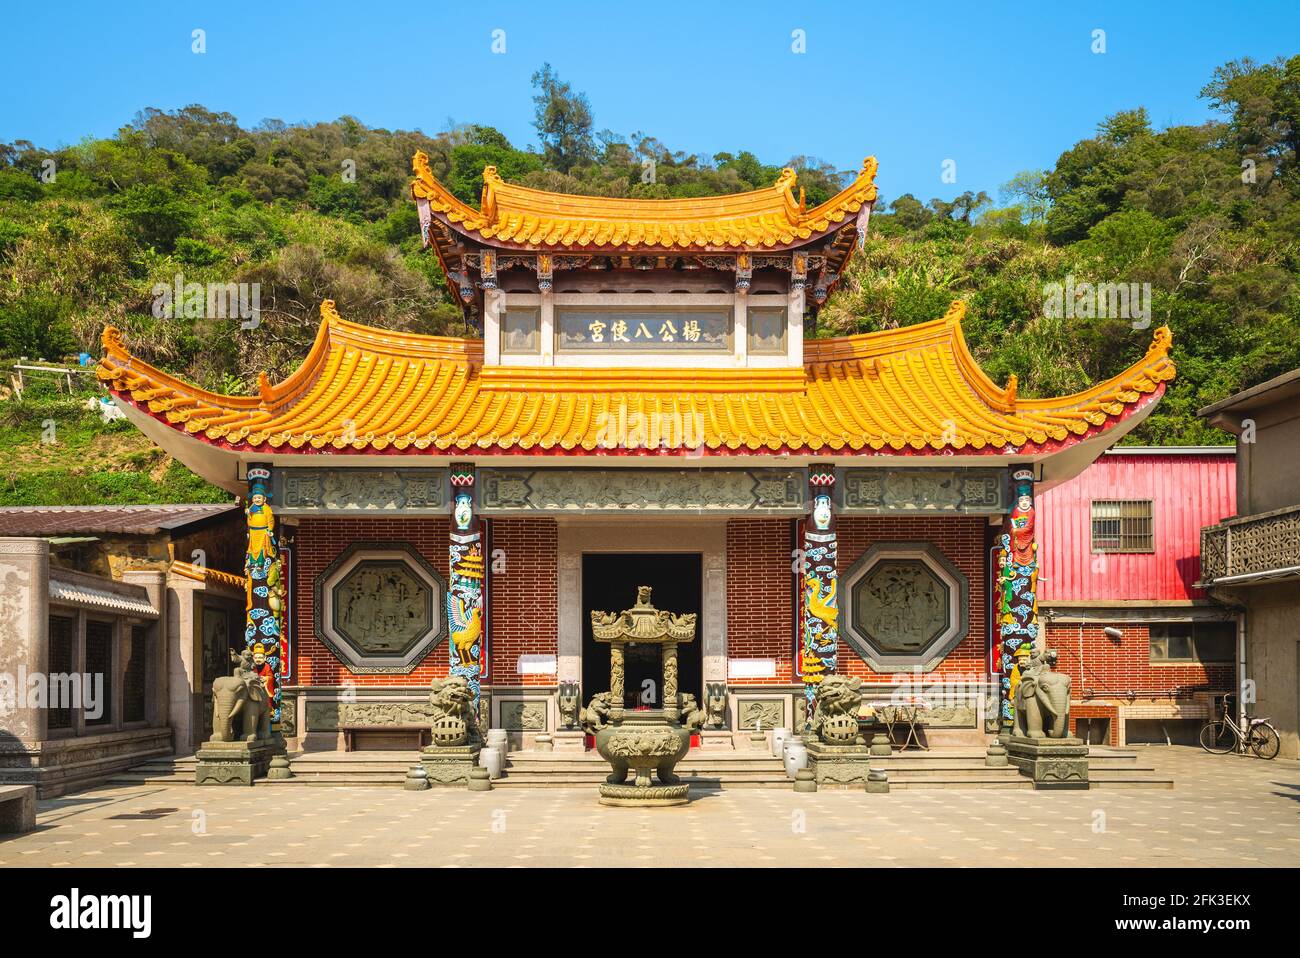 Yang gong ba shi Temple in beigan, matsu, taiwan. Translation: yang gong ba shi temple, the name of this temple Stock Photo